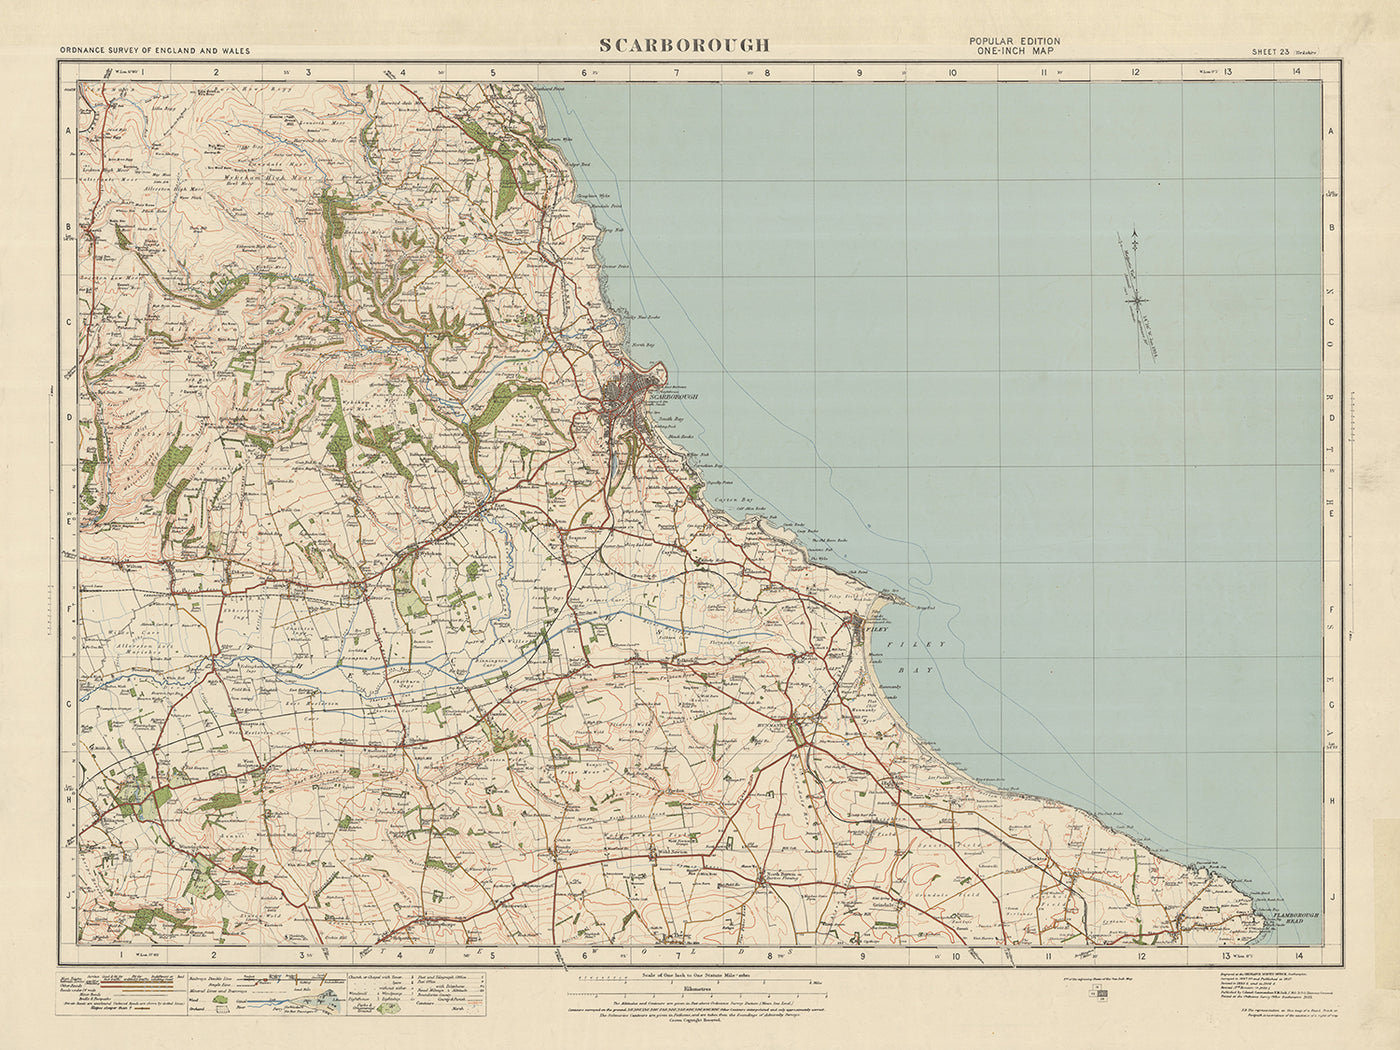 Ancienne carte de l'Ordnance Survey, feuille 23 - Scarborough, 1925 : Filey, Hunmanby, Sherburn, North Riding Forest Park, Flamborough Outer Headlands Nature Reserve